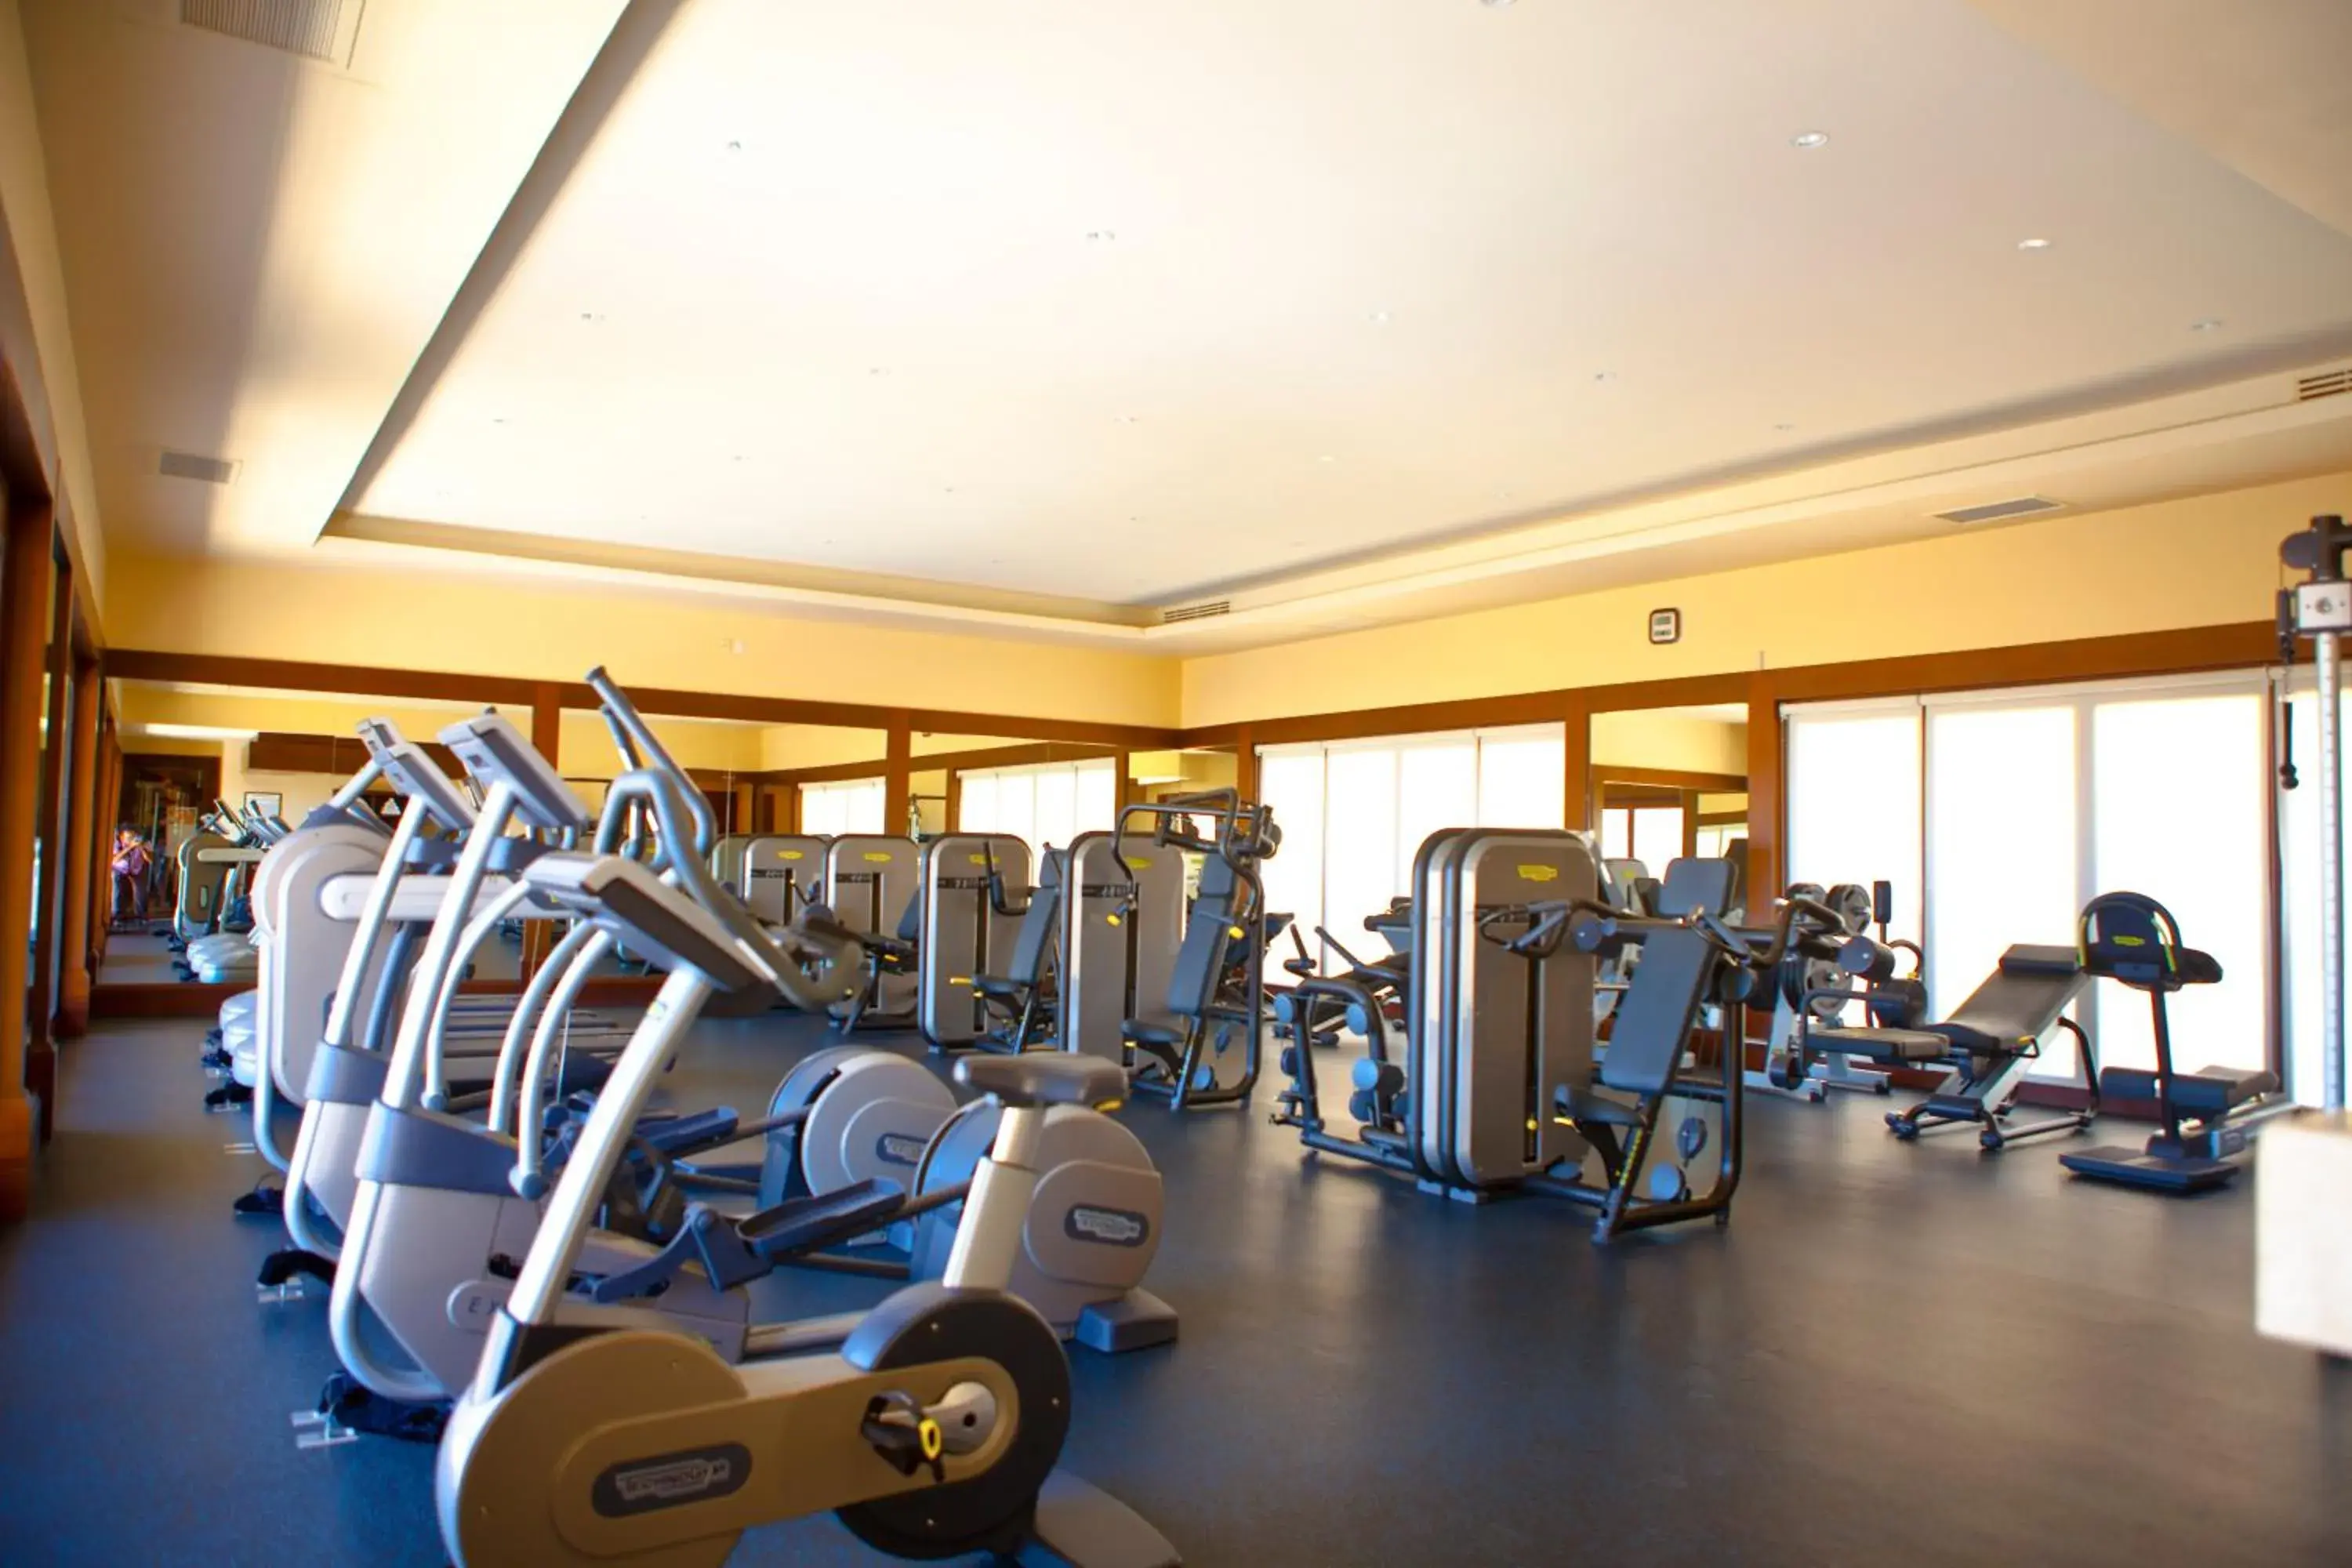 Fitness centre/facilities, Fitness Center/Facilities in Pueblo Bonito Montecristo Luxury Villas - All Inclusive